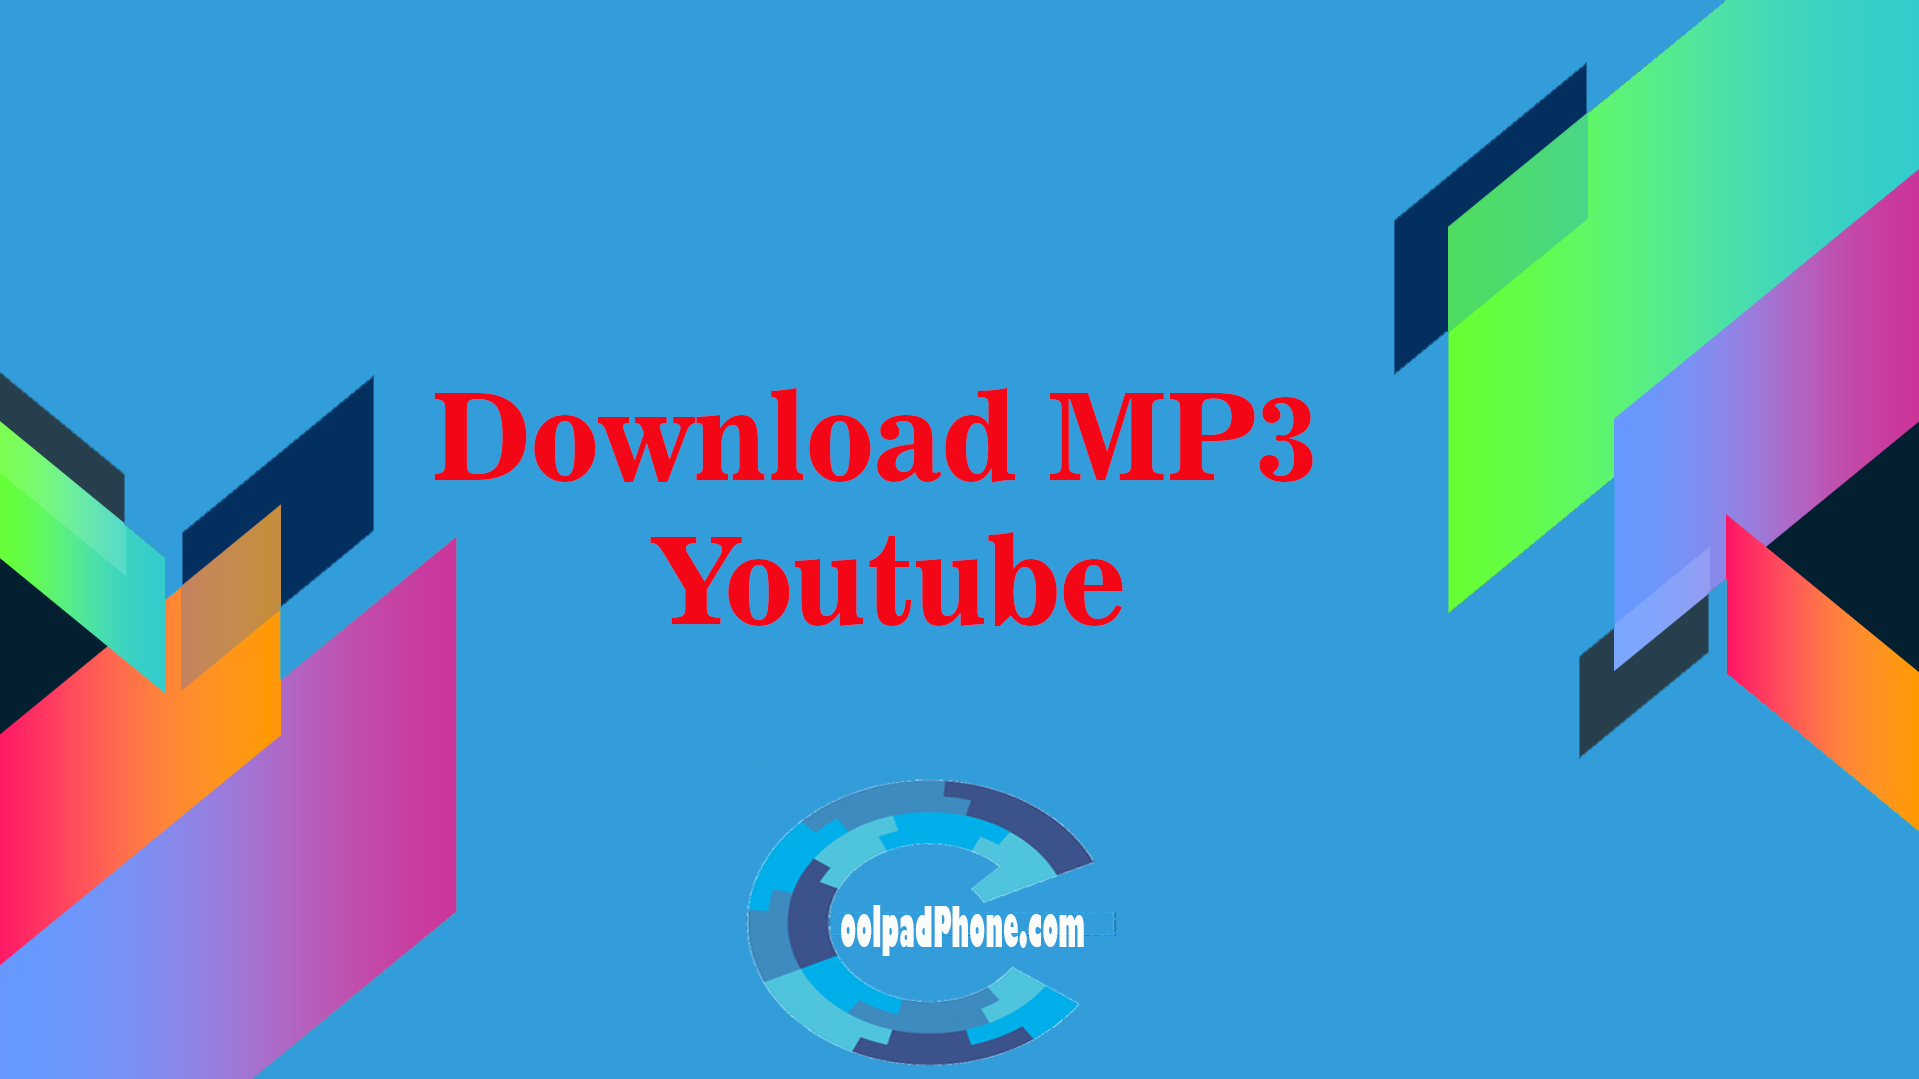 Cara Download Video Di Youtube Jadi Mp3 / Cara Download Mp3 Dari Youtube Di Pc Dan Laptop No Ribet / 2 cara download youtube jadi mp3.